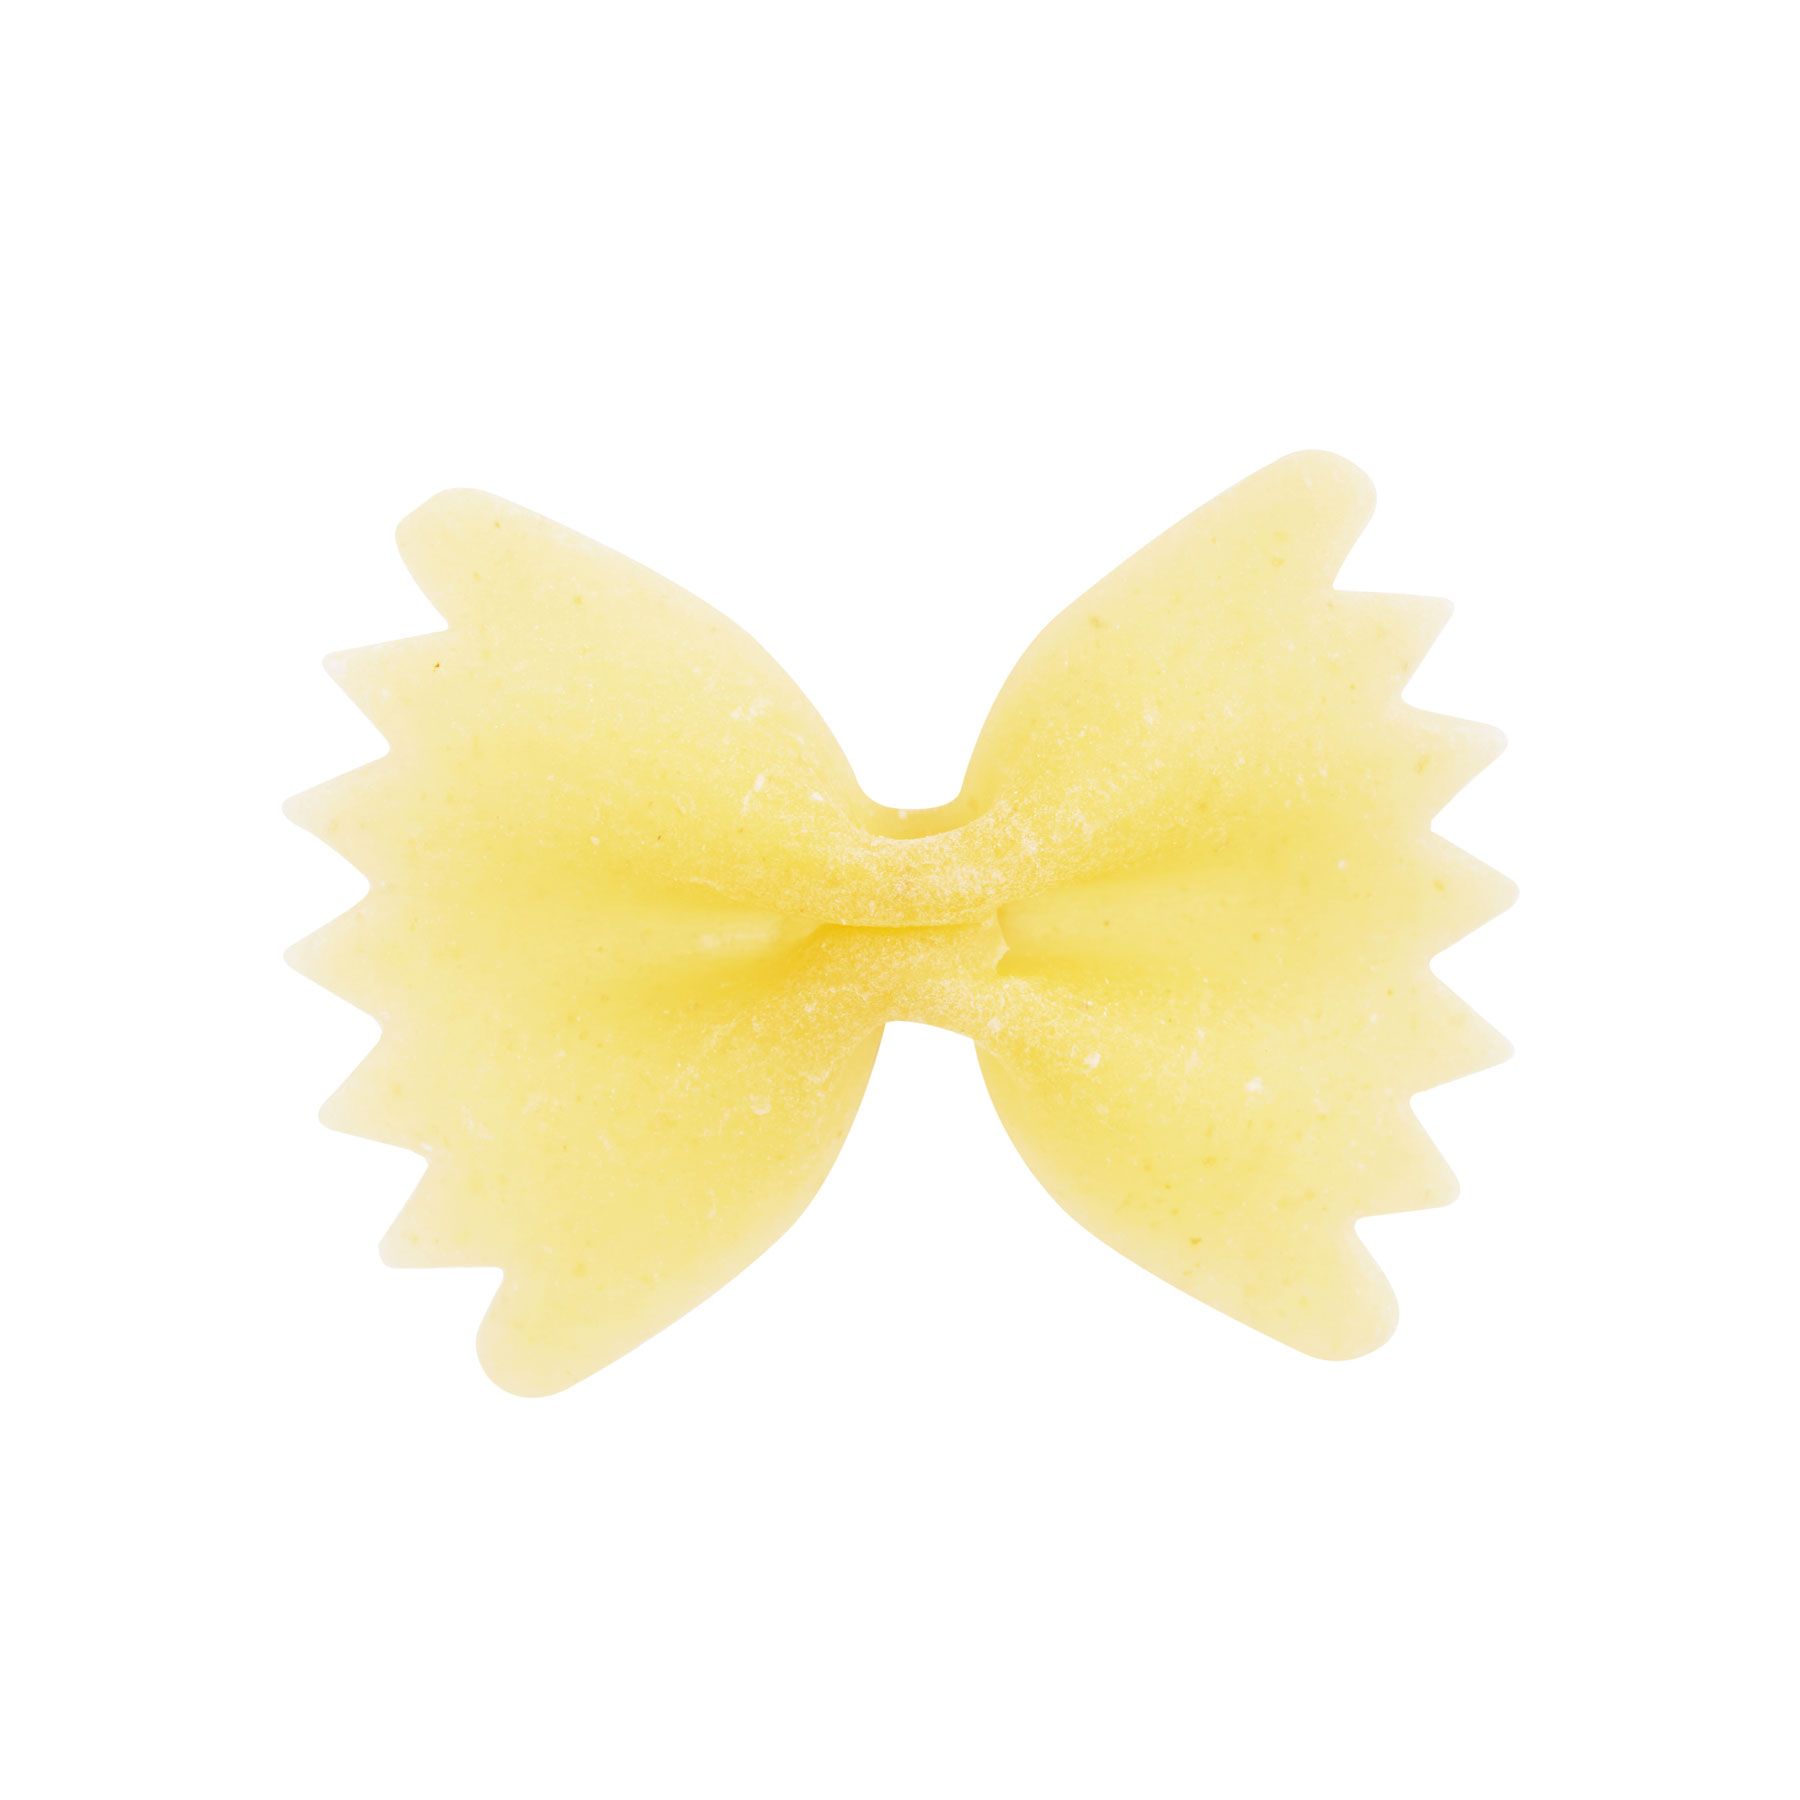 파스타 국수 종류-Farfalle 또는 나비 국수